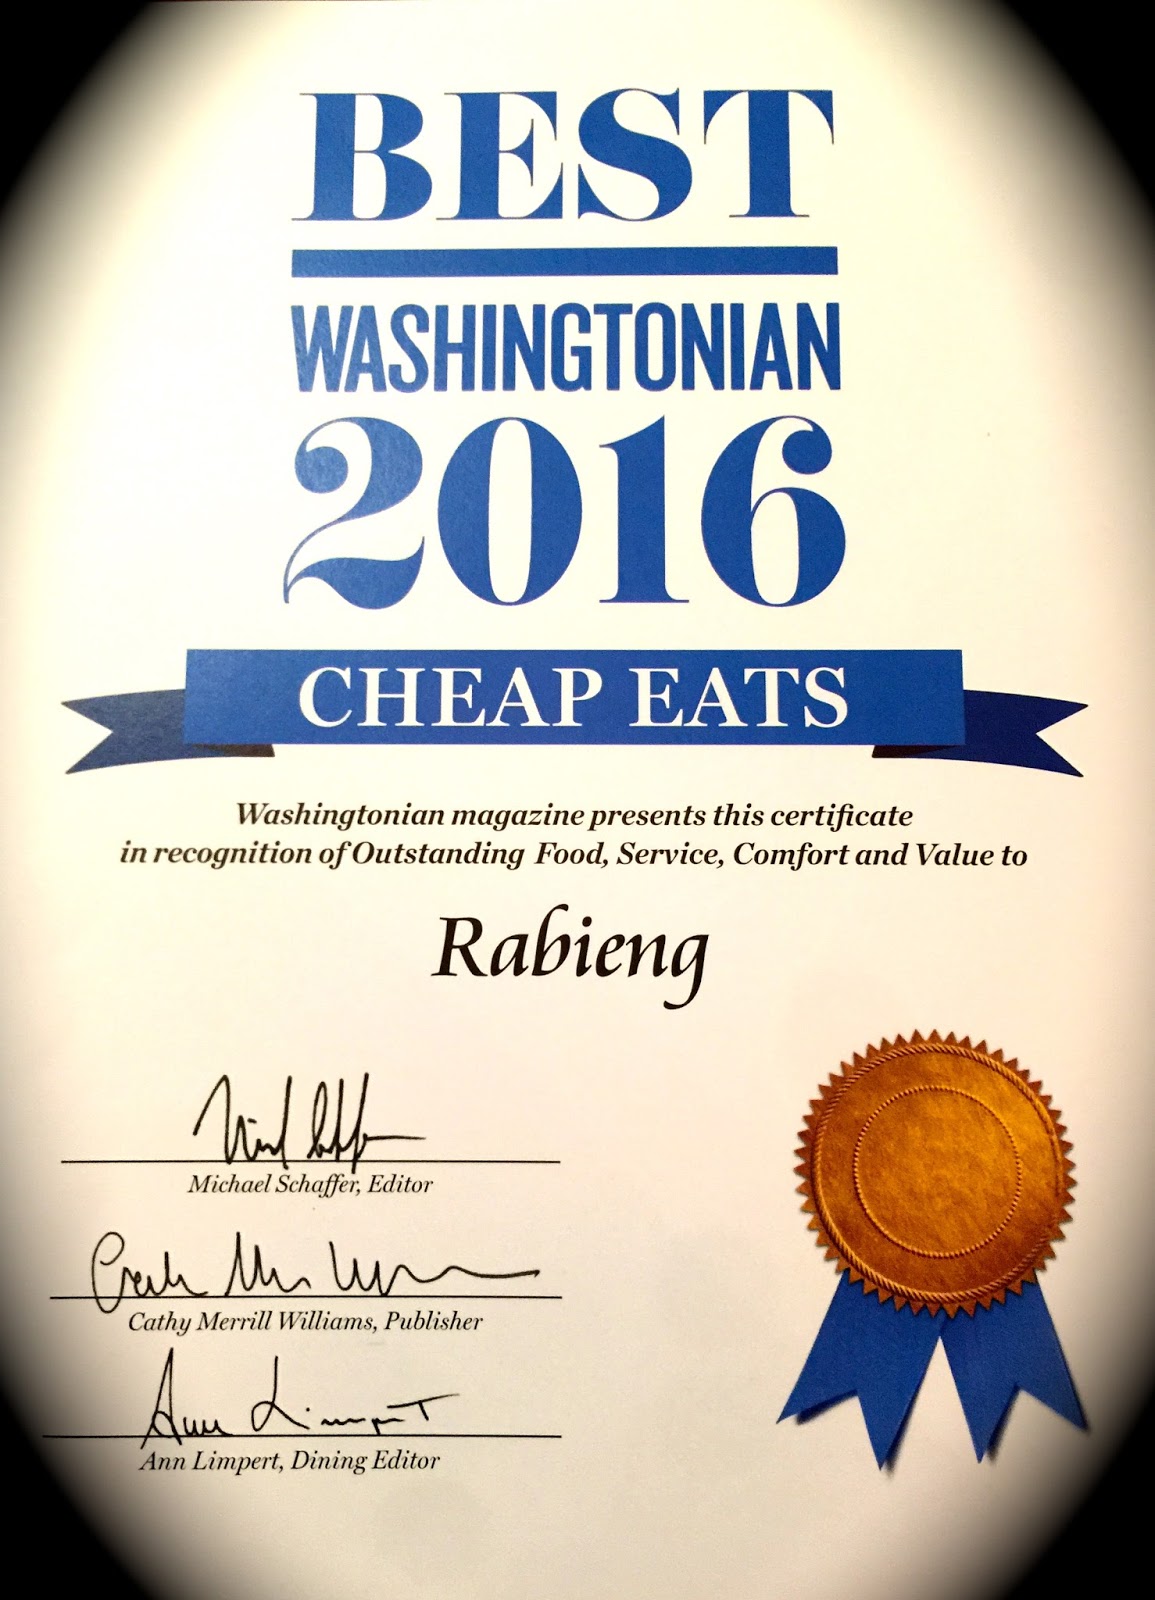 Rabieng Thai Restaurant: 2016 Washingtonian Best Cheap Eats!